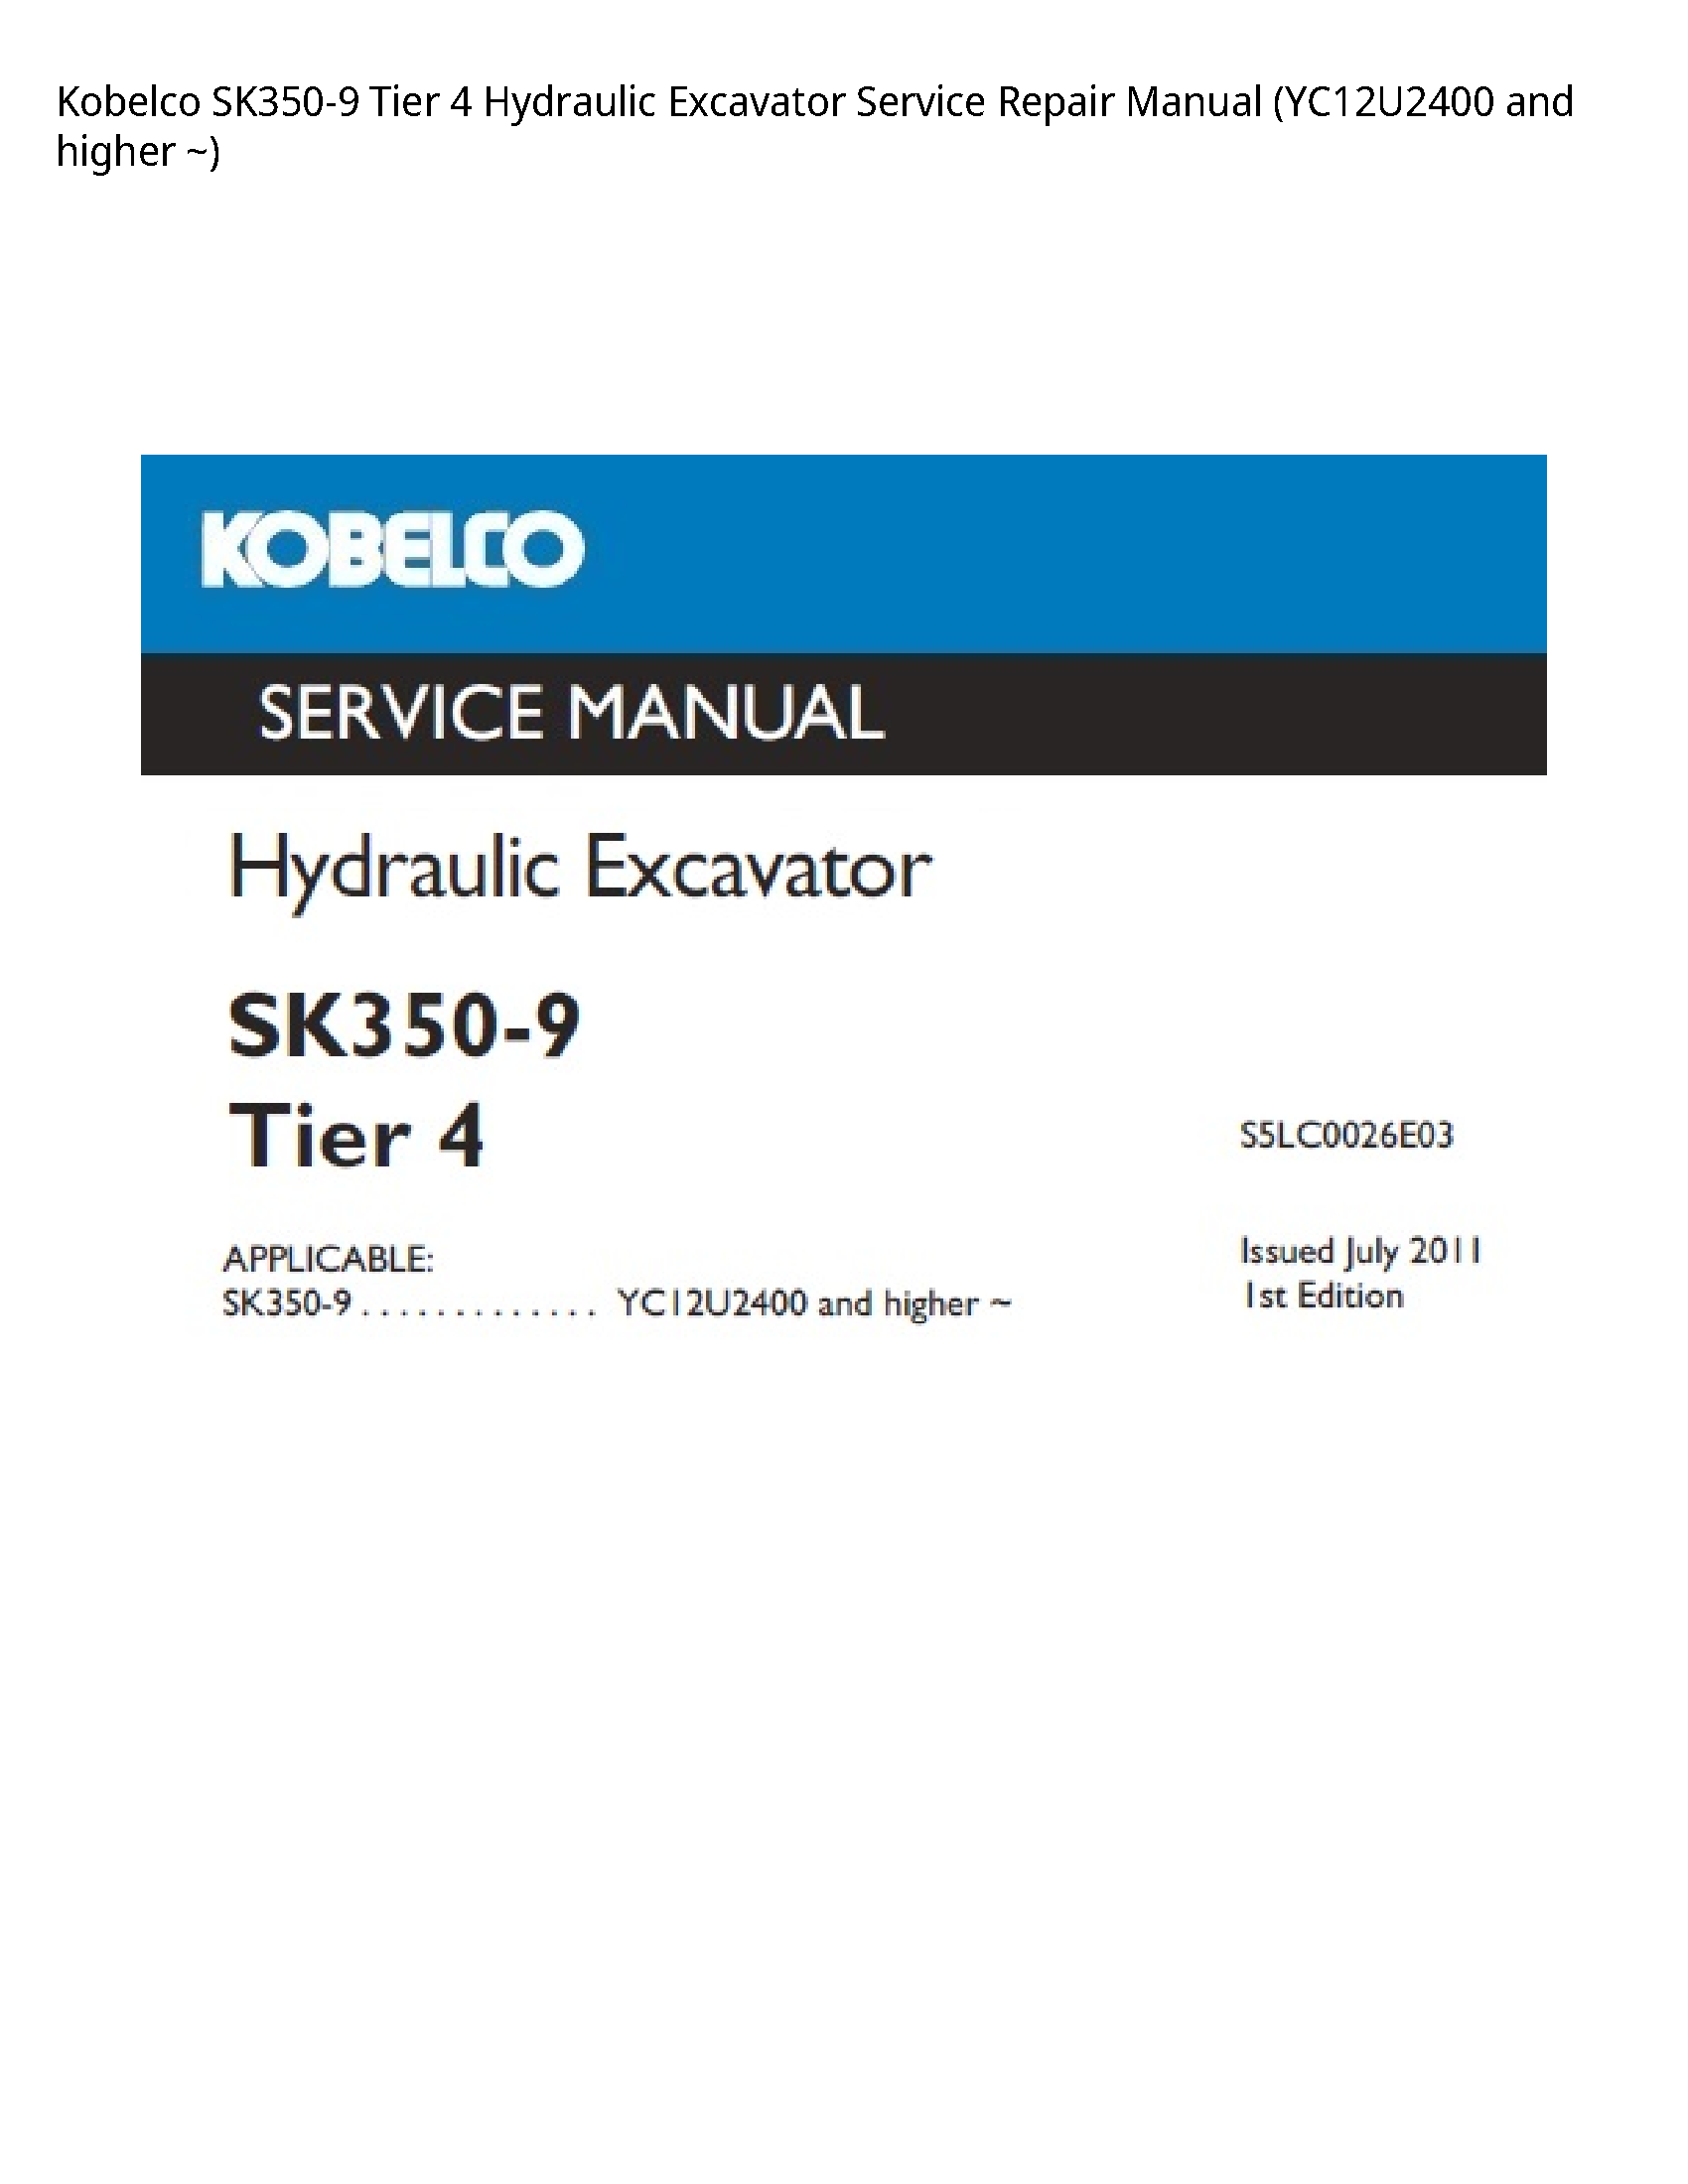 Kobelco SK350-9 Tier Hydraulic Excavator manual